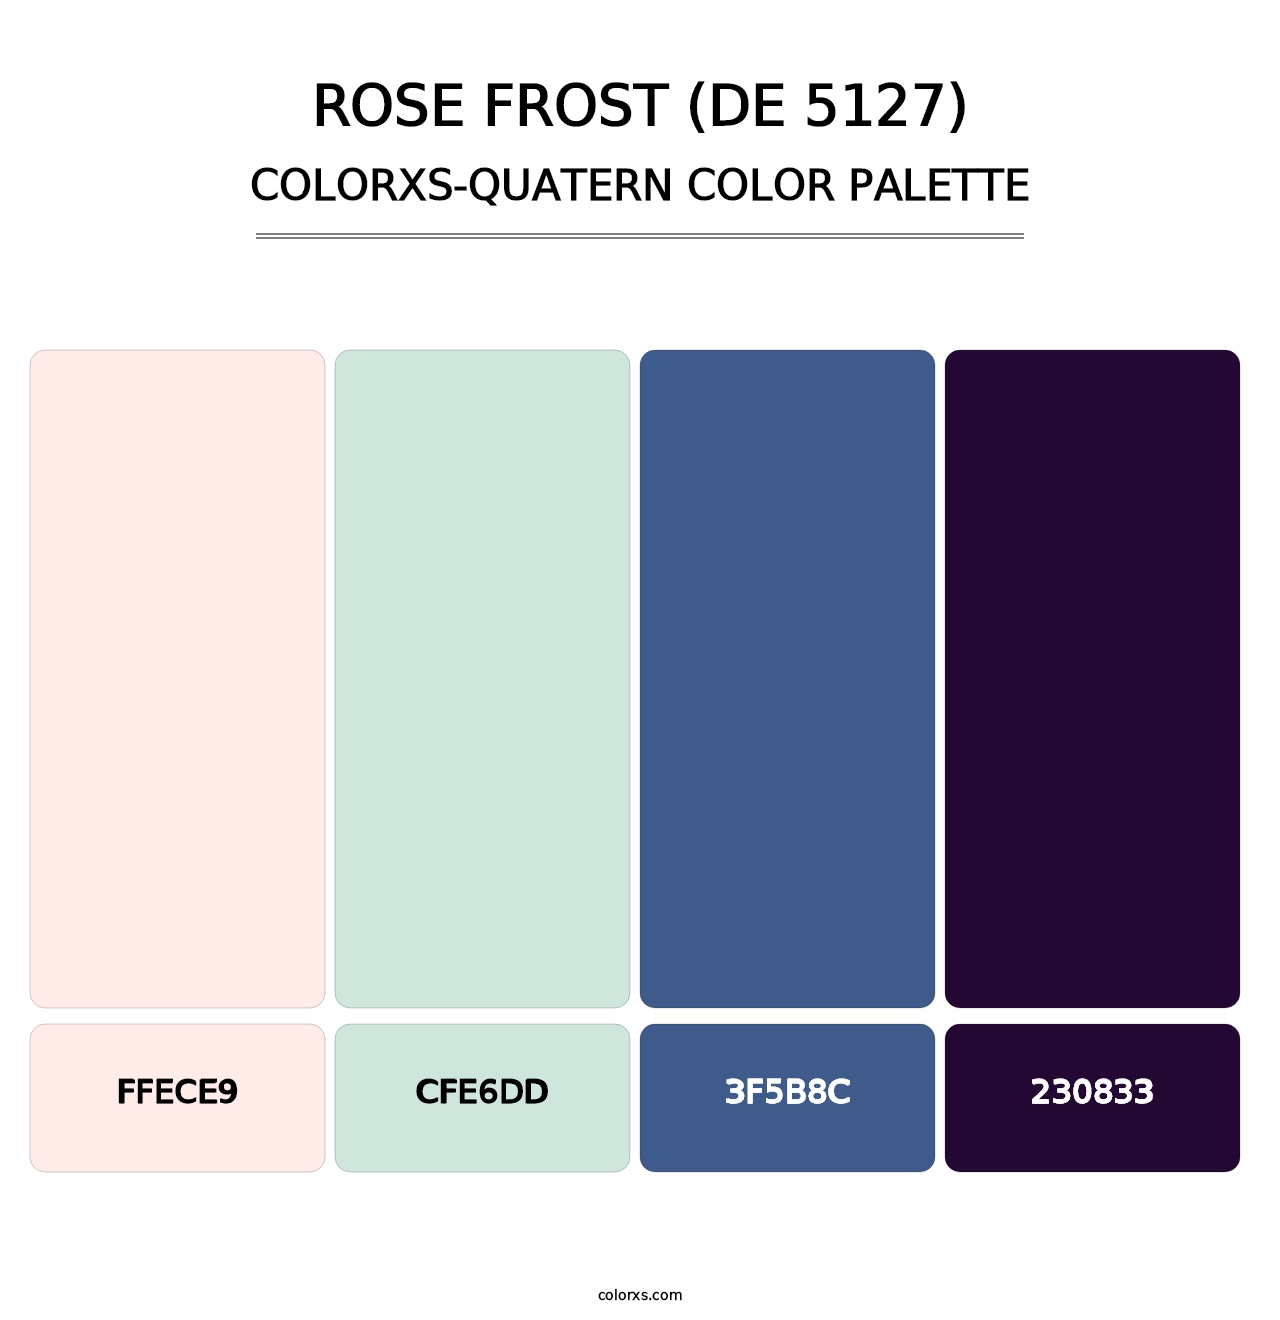 Rose Frost (DE 5127) - Colorxs Quatern Palette